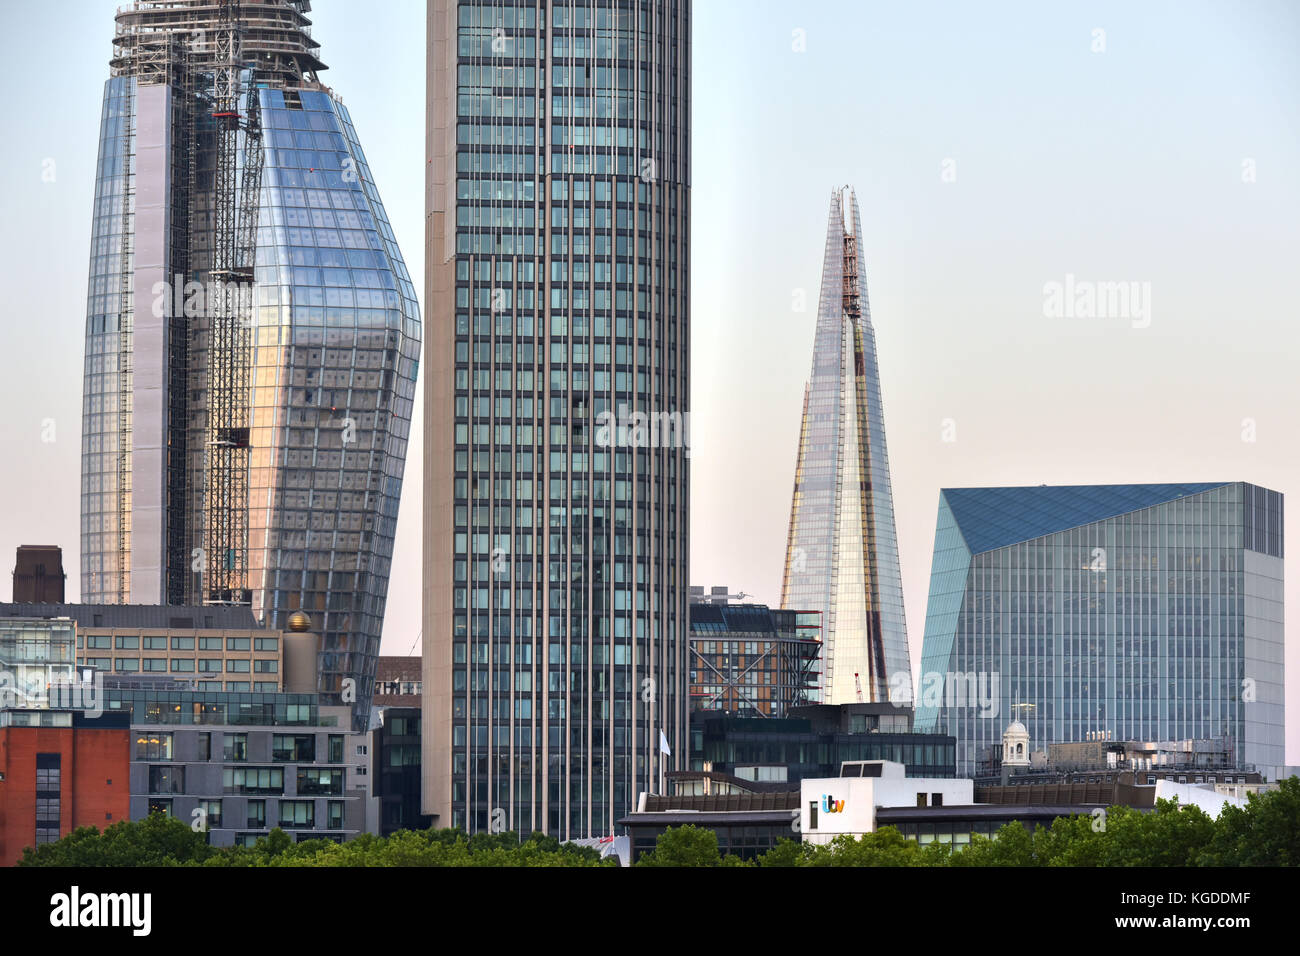 Los nuevos desarrollos a lo largo de la orilla sur del río Támesis en Londres están creando una alternativa skyline londinense. De izquierda a derecha, uno de Blackfriars, un resi Foto de stock